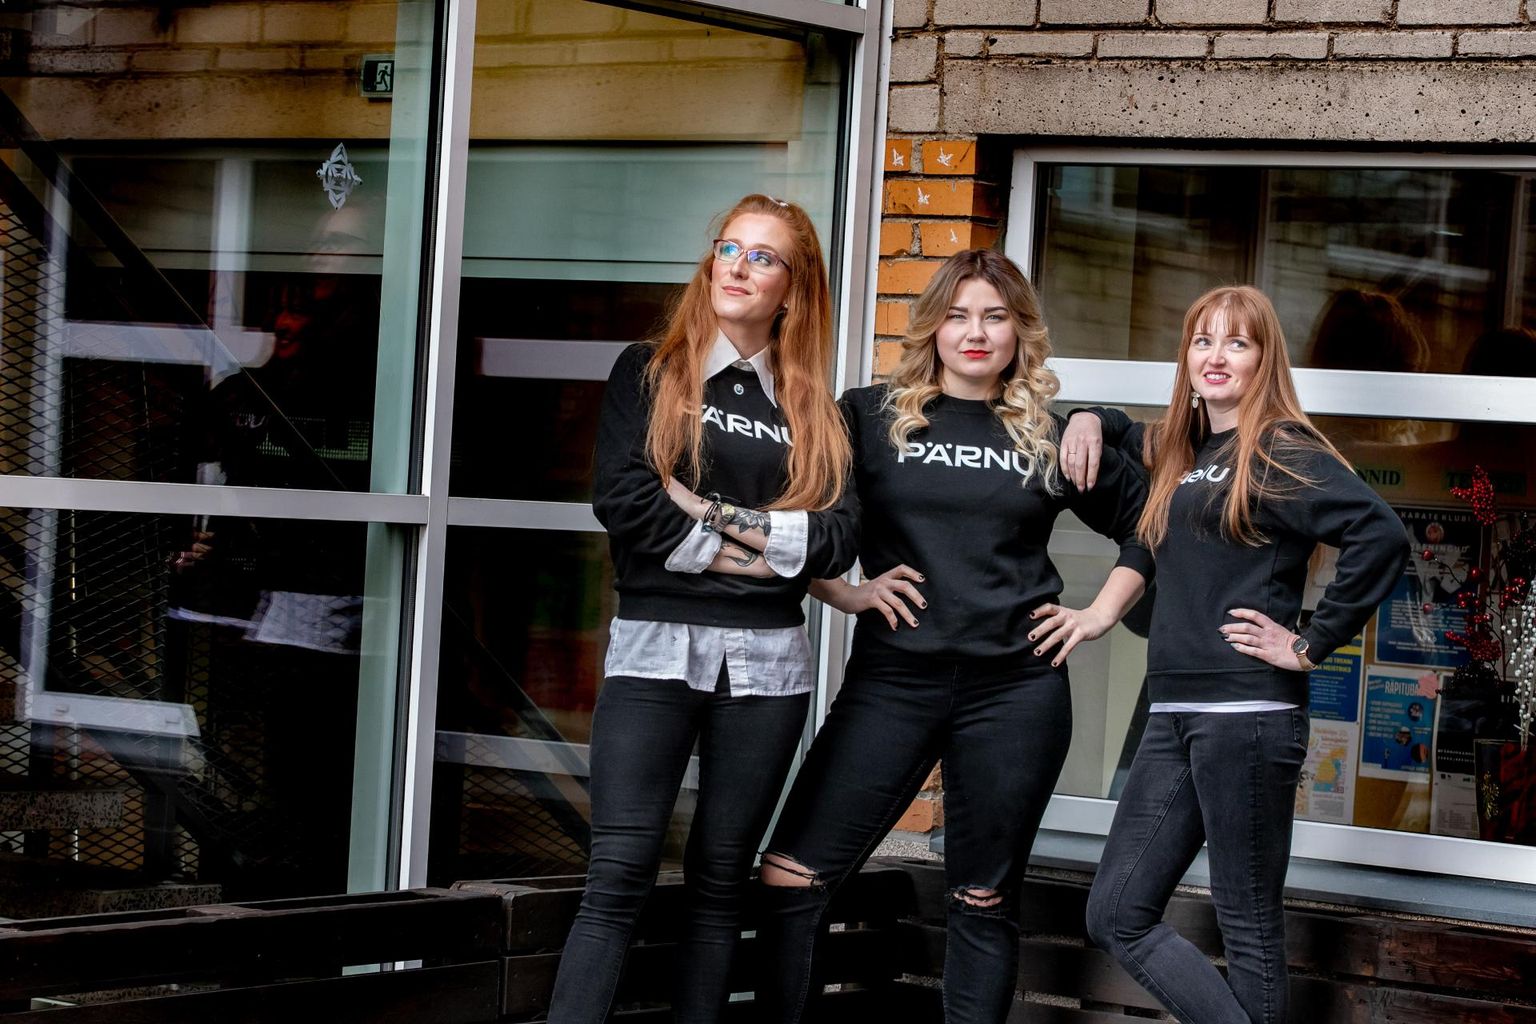 Mobillsed noorsootöötajad (vasakult) Triin Mäger, Margit Vellend ja Annely Reile lubavad olla noortele kättesaadavad nende harjumuspärases keskkonnas. 